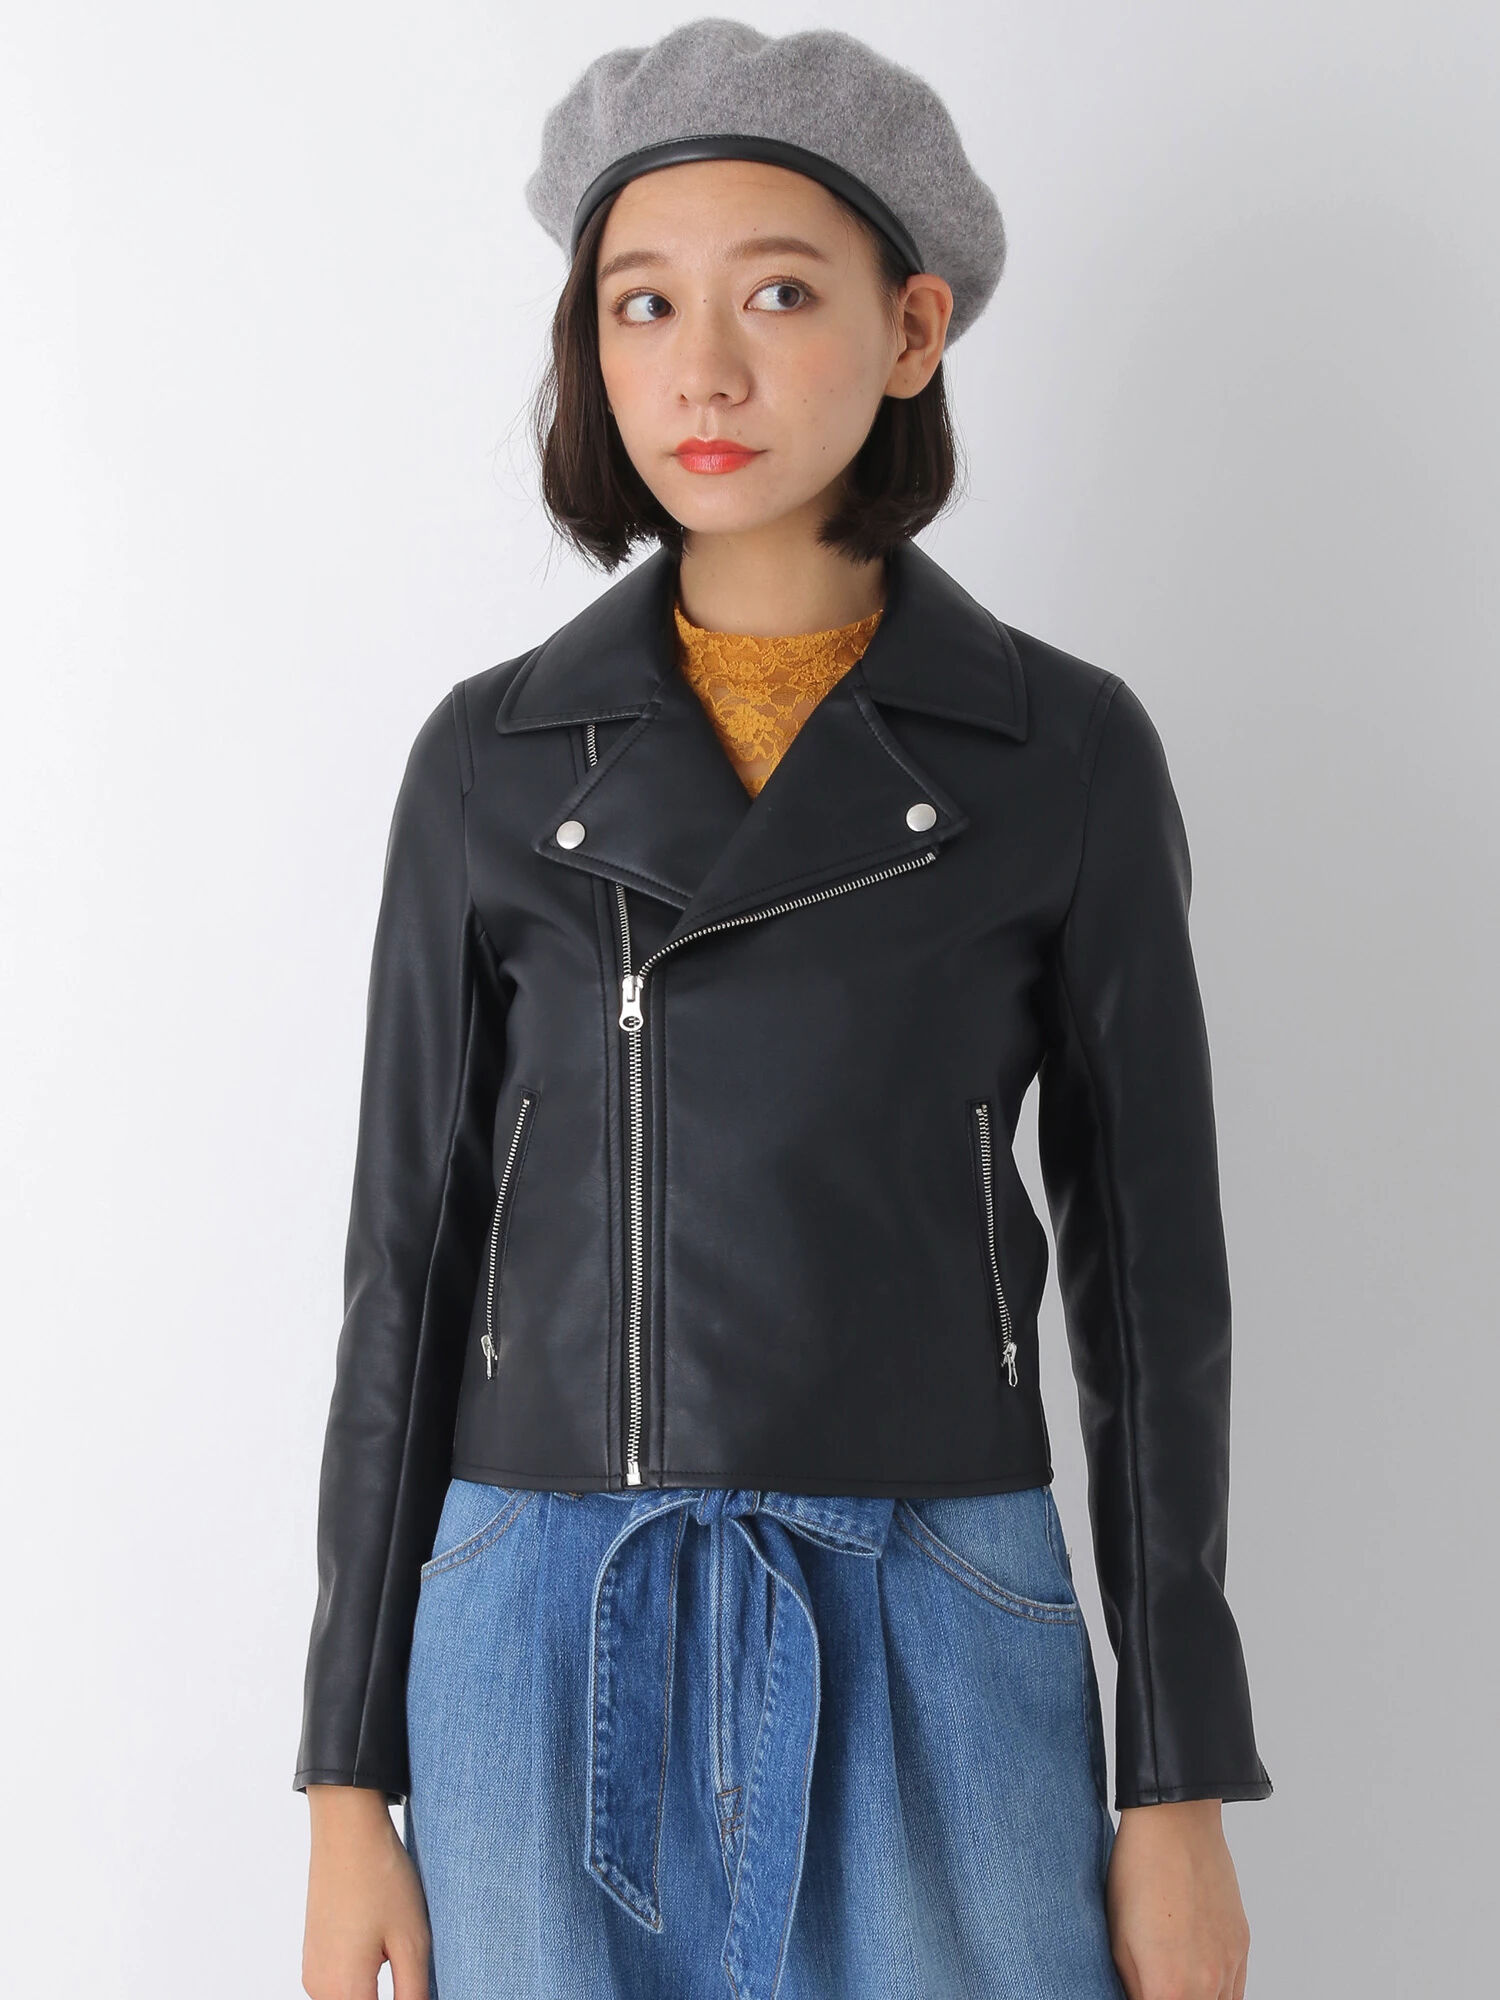 フェイクレザーライダースジャケット も定額で借りホーダイのファッションレンタルアプリmechakari